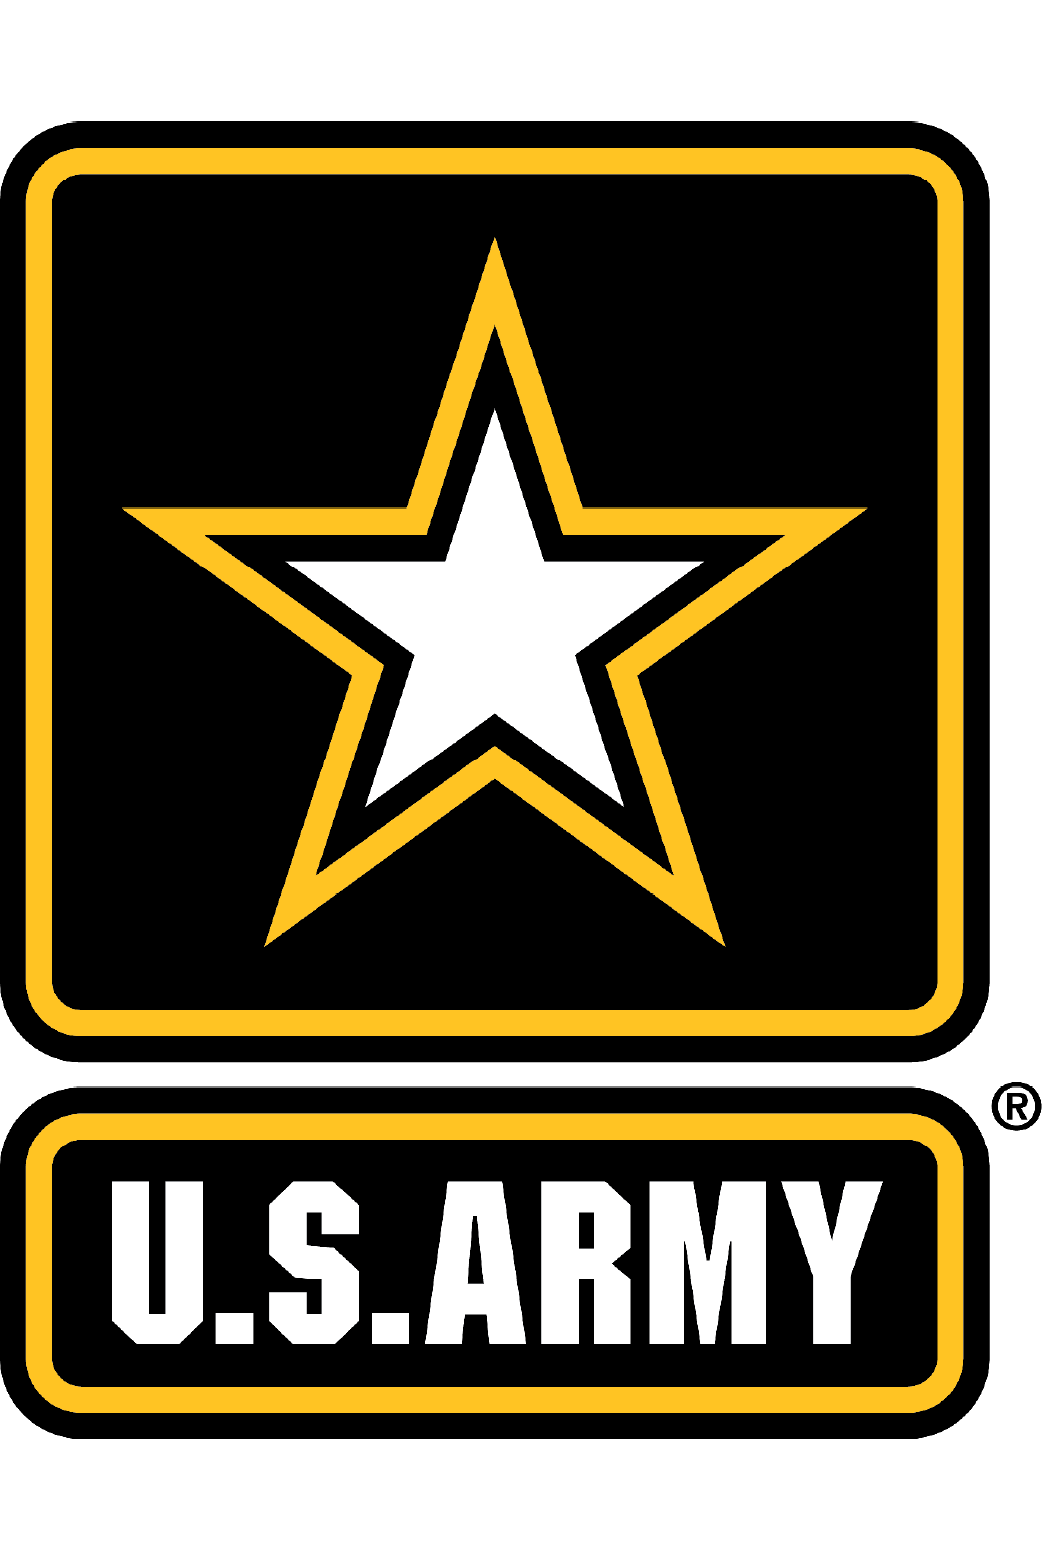 Army star patch